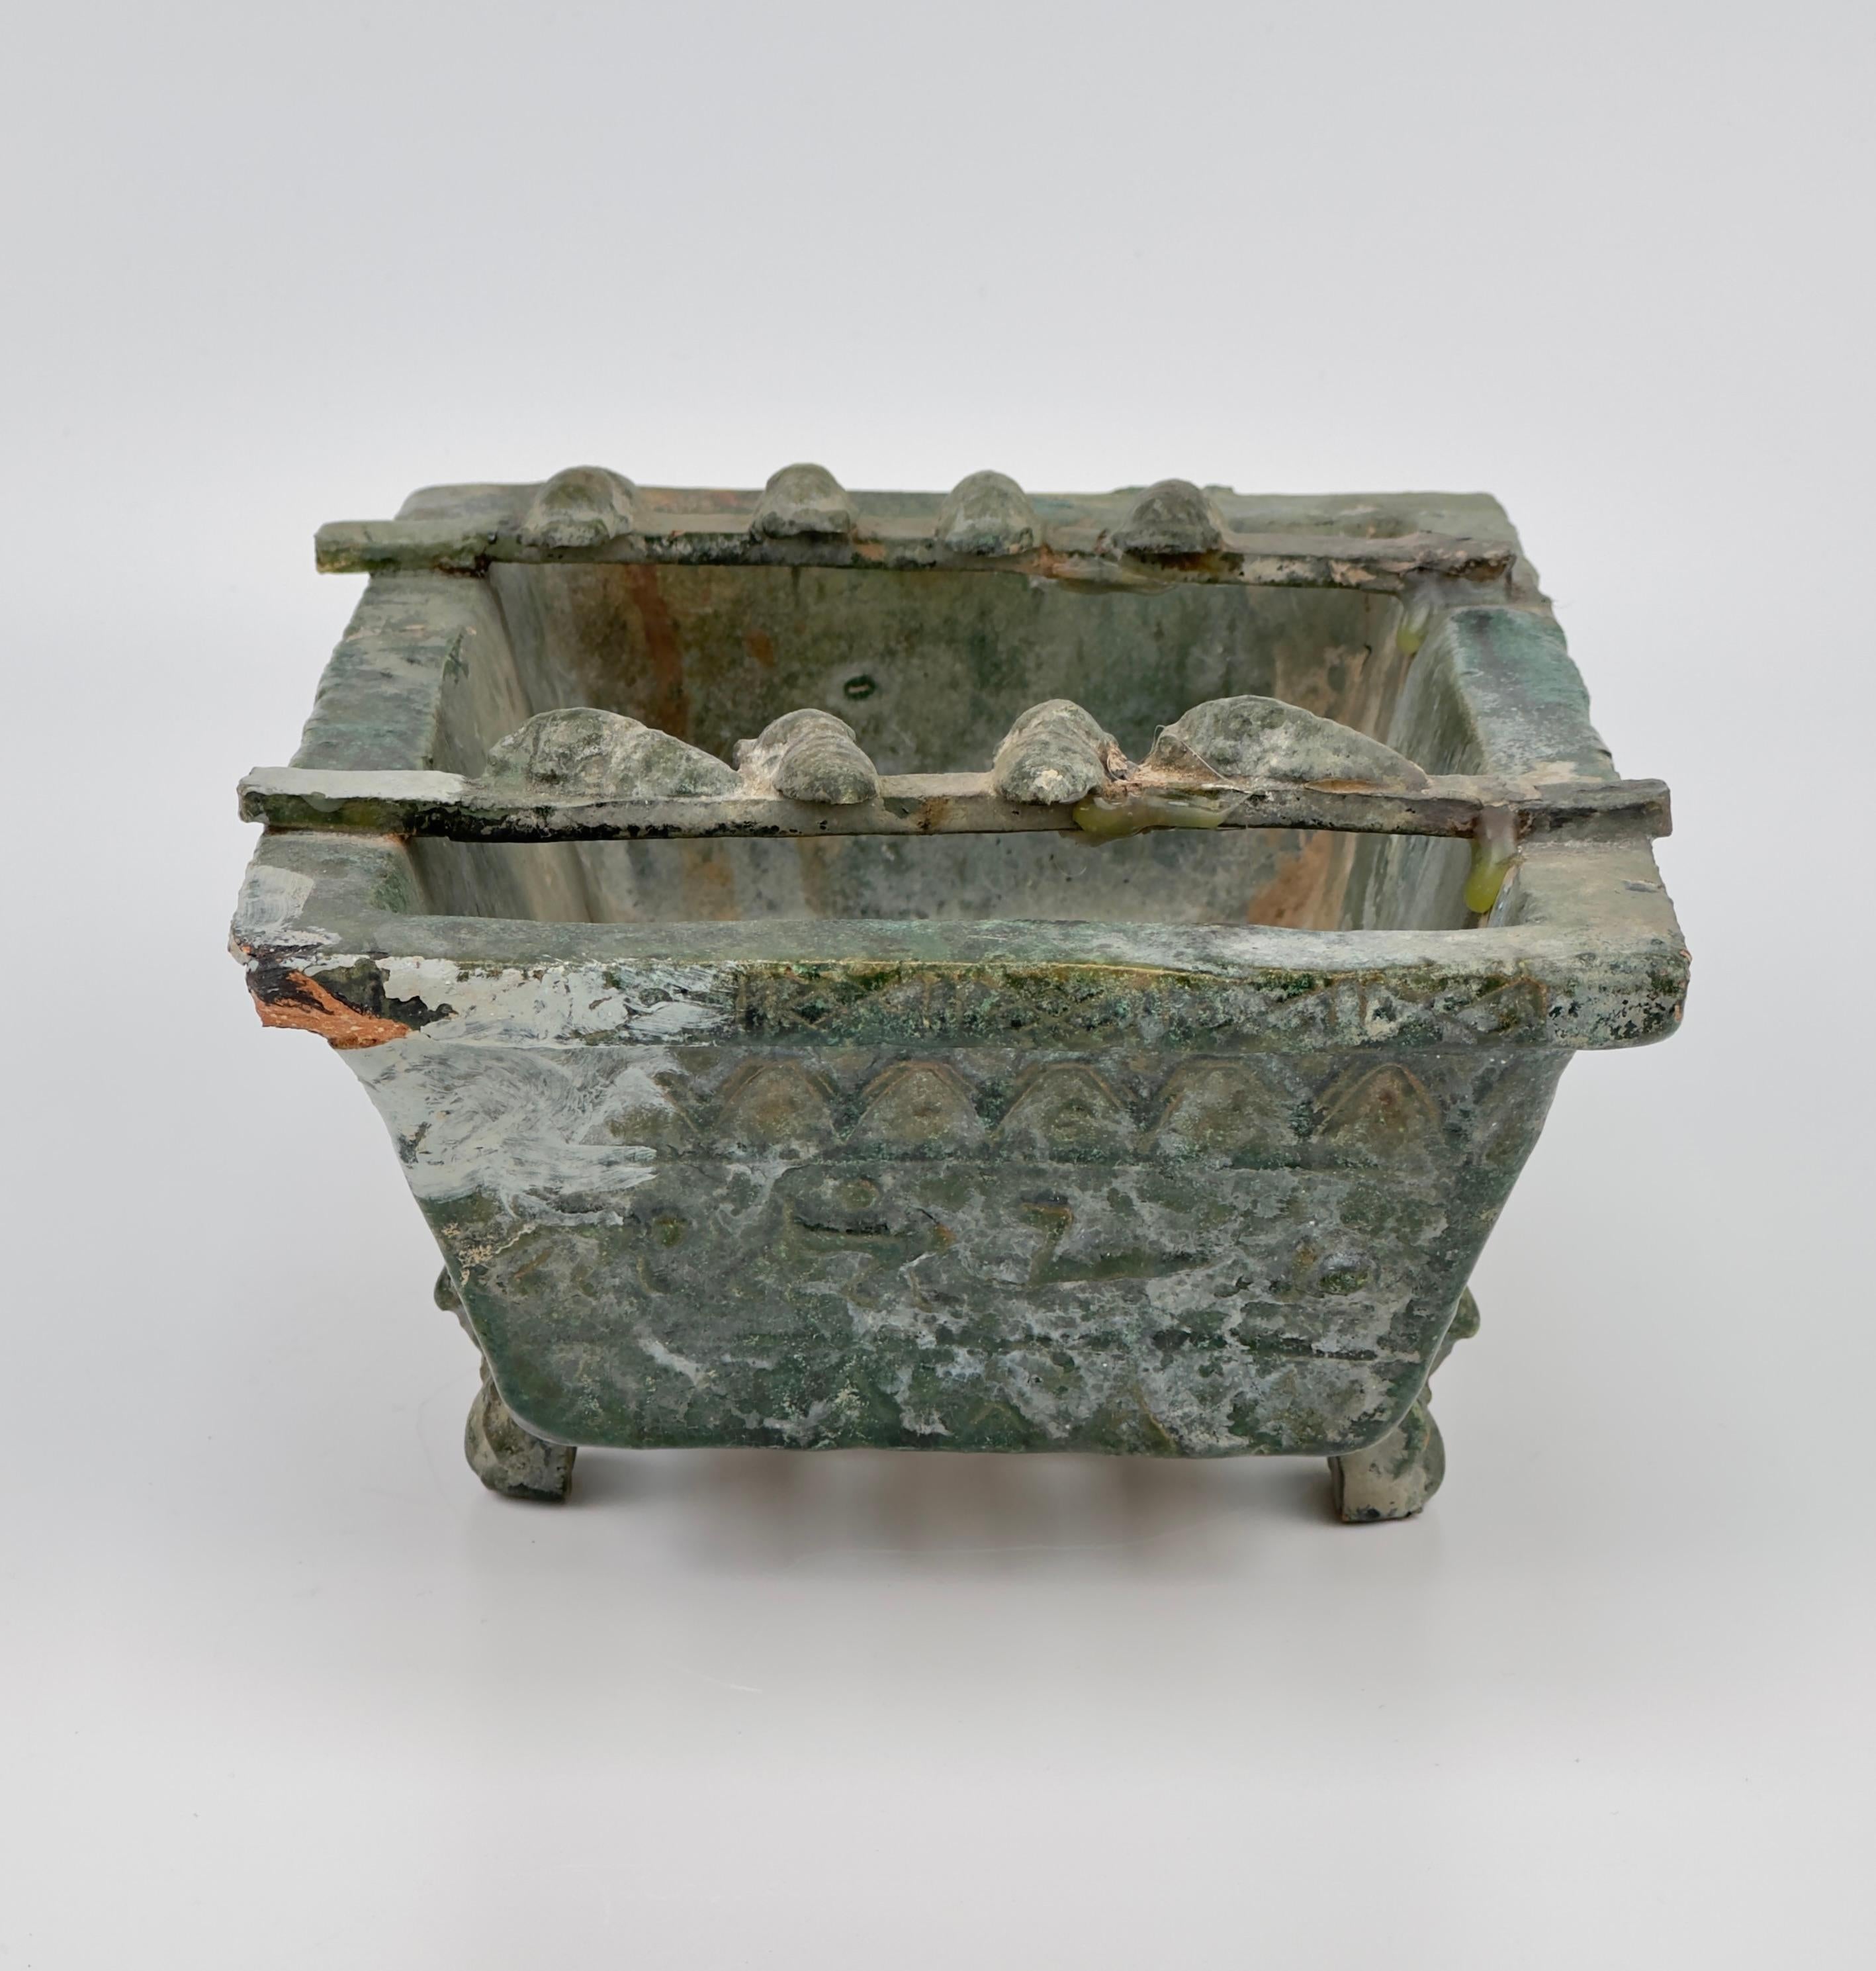 Ce brasero en poterie, un artefact funéraire de la dynastie Han, présente des côtés quadrilatéraux inclinés vers l'intérieur et une base avec des fentes d'aération. Chaque face est ornée de motifs animaliers et géométriques. Le brasero repose sur